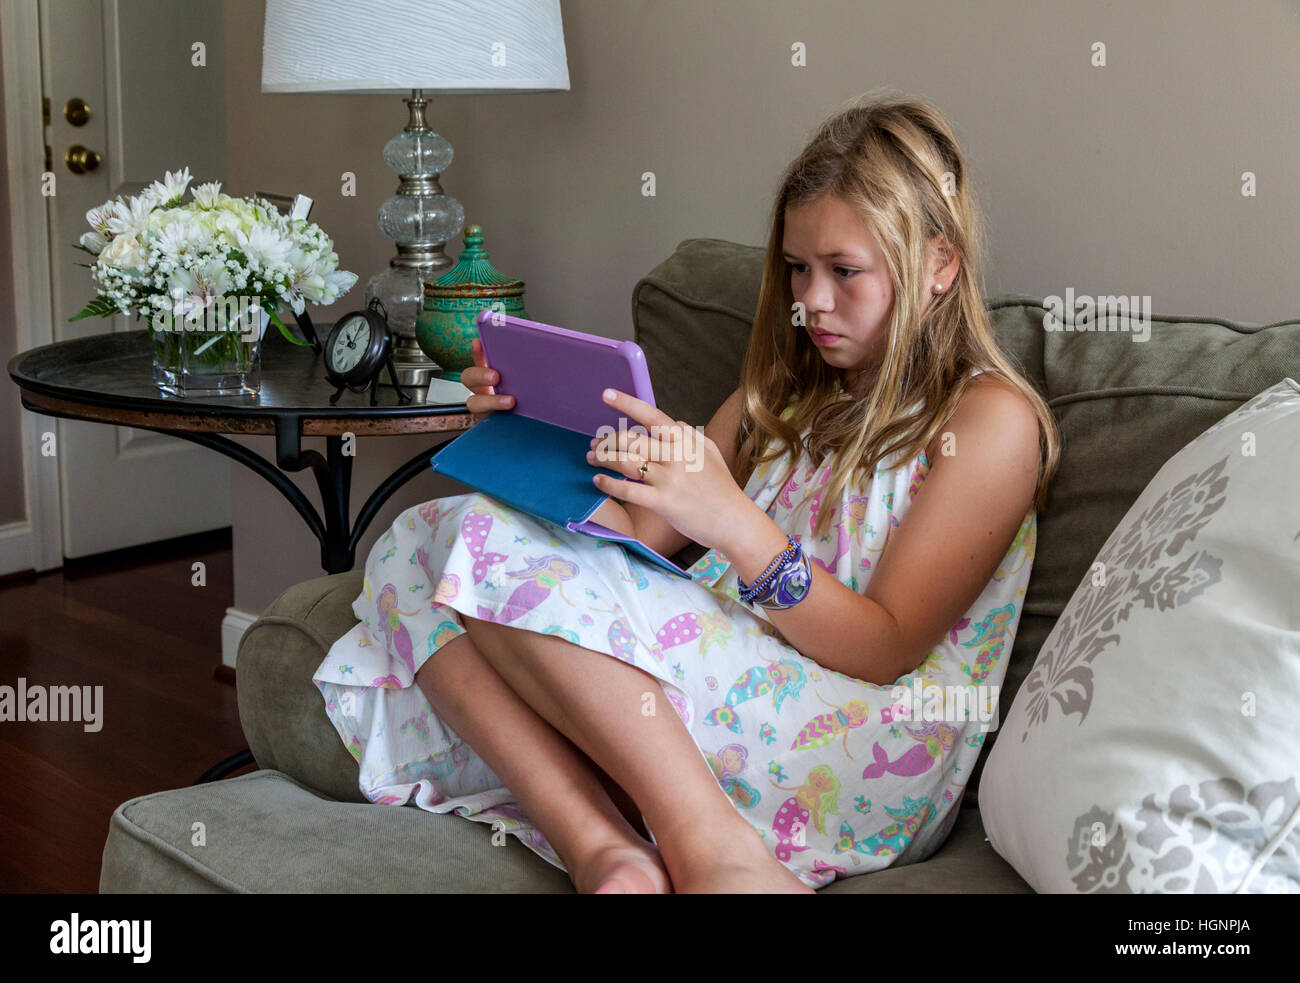 Eleven-Year-Old Girl Spiel auf dem iPad. Stockfoto